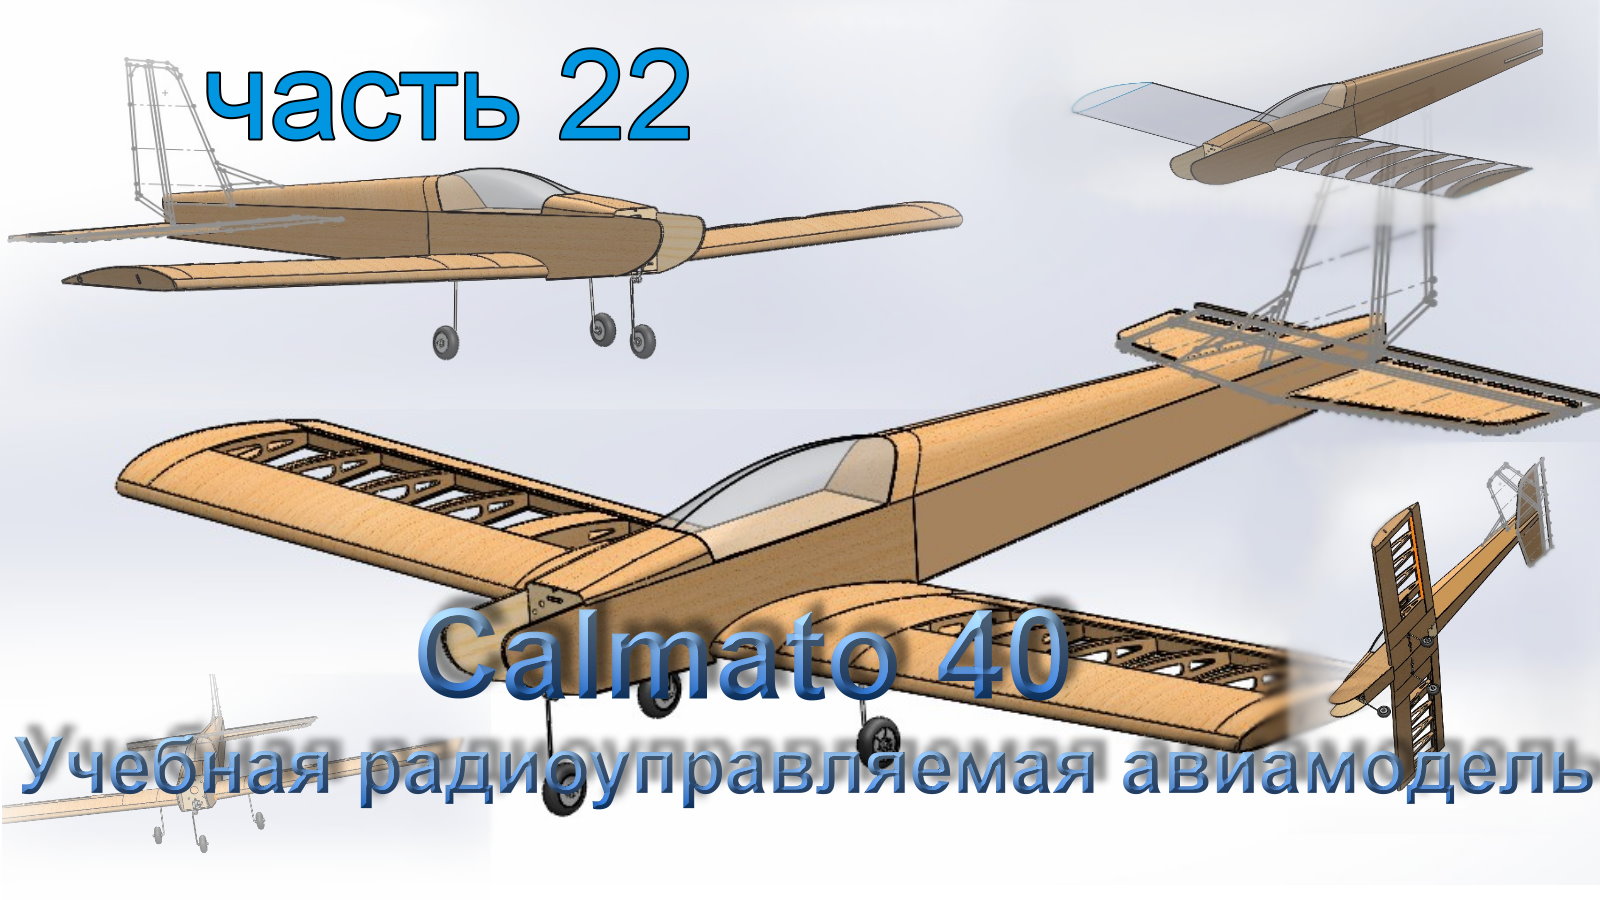 Учебная радиоуправляемая авиамодель Calmato 40 (часть 22)